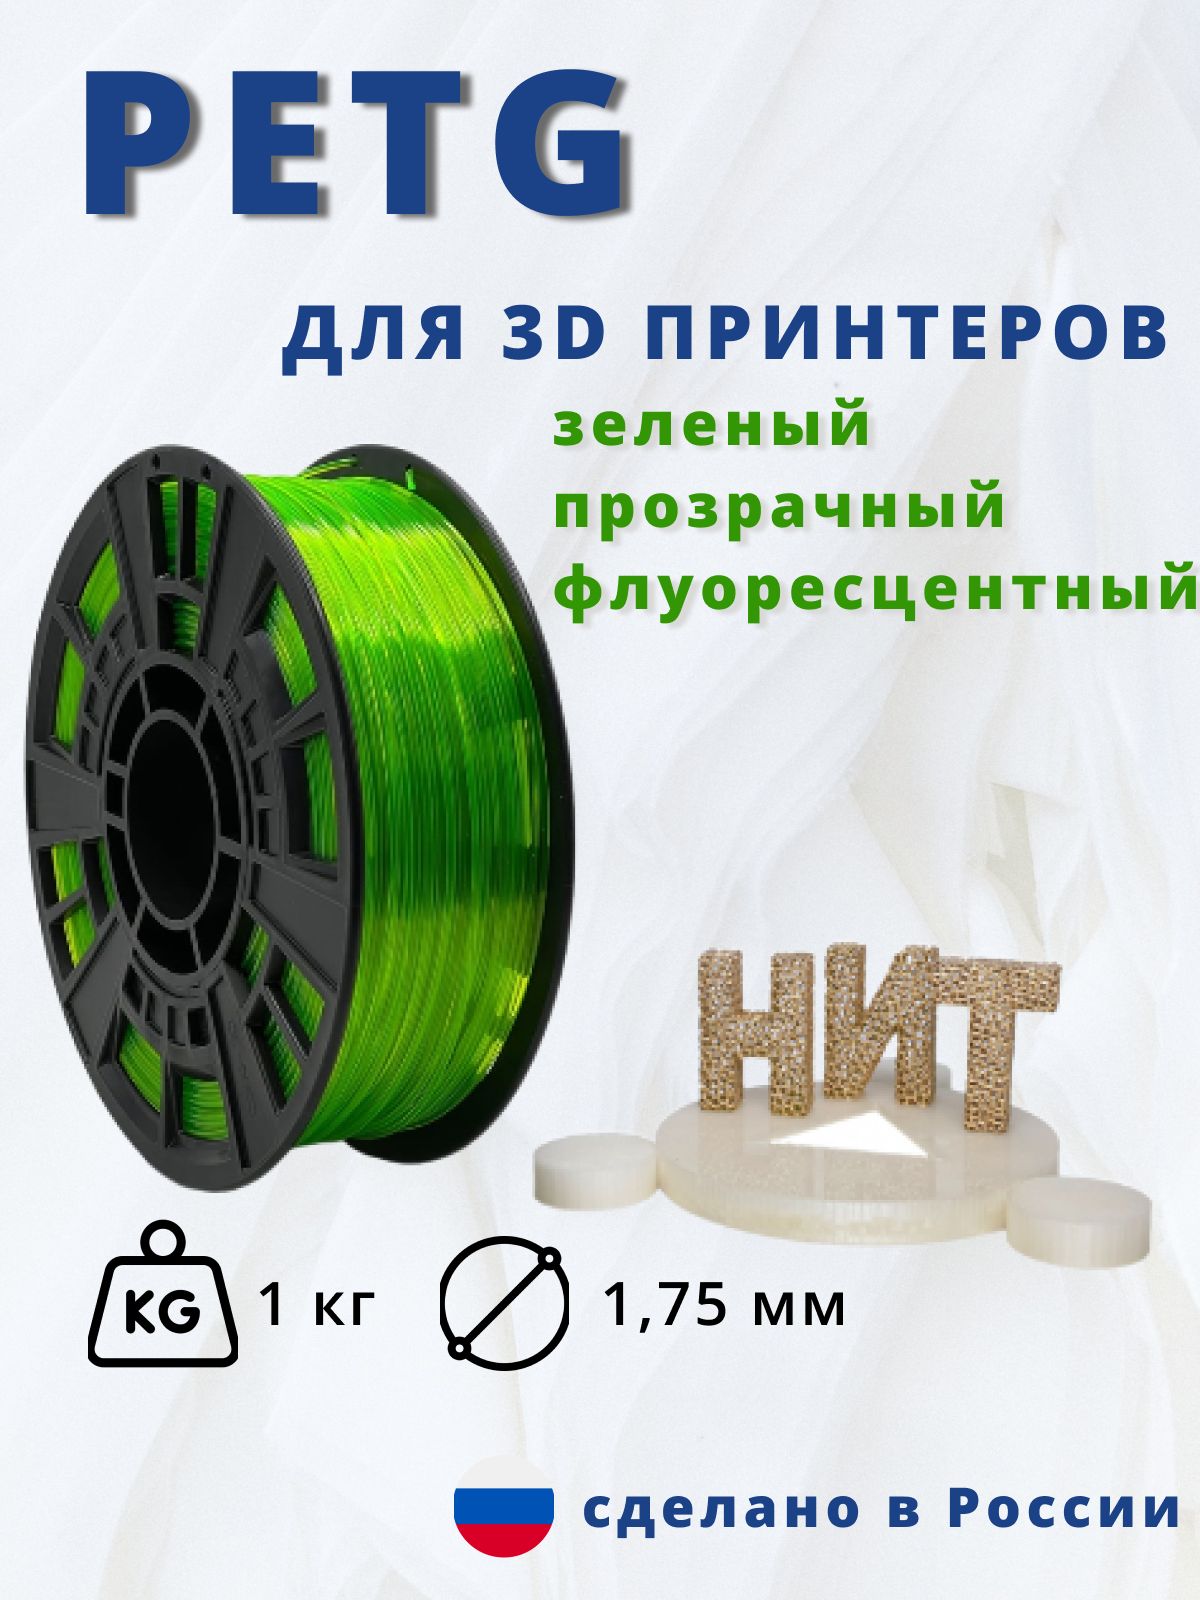 Пластикдля3Dпечати"НИТ",Petgзеленыйпрозрачныйфлуоресцентный1кг.